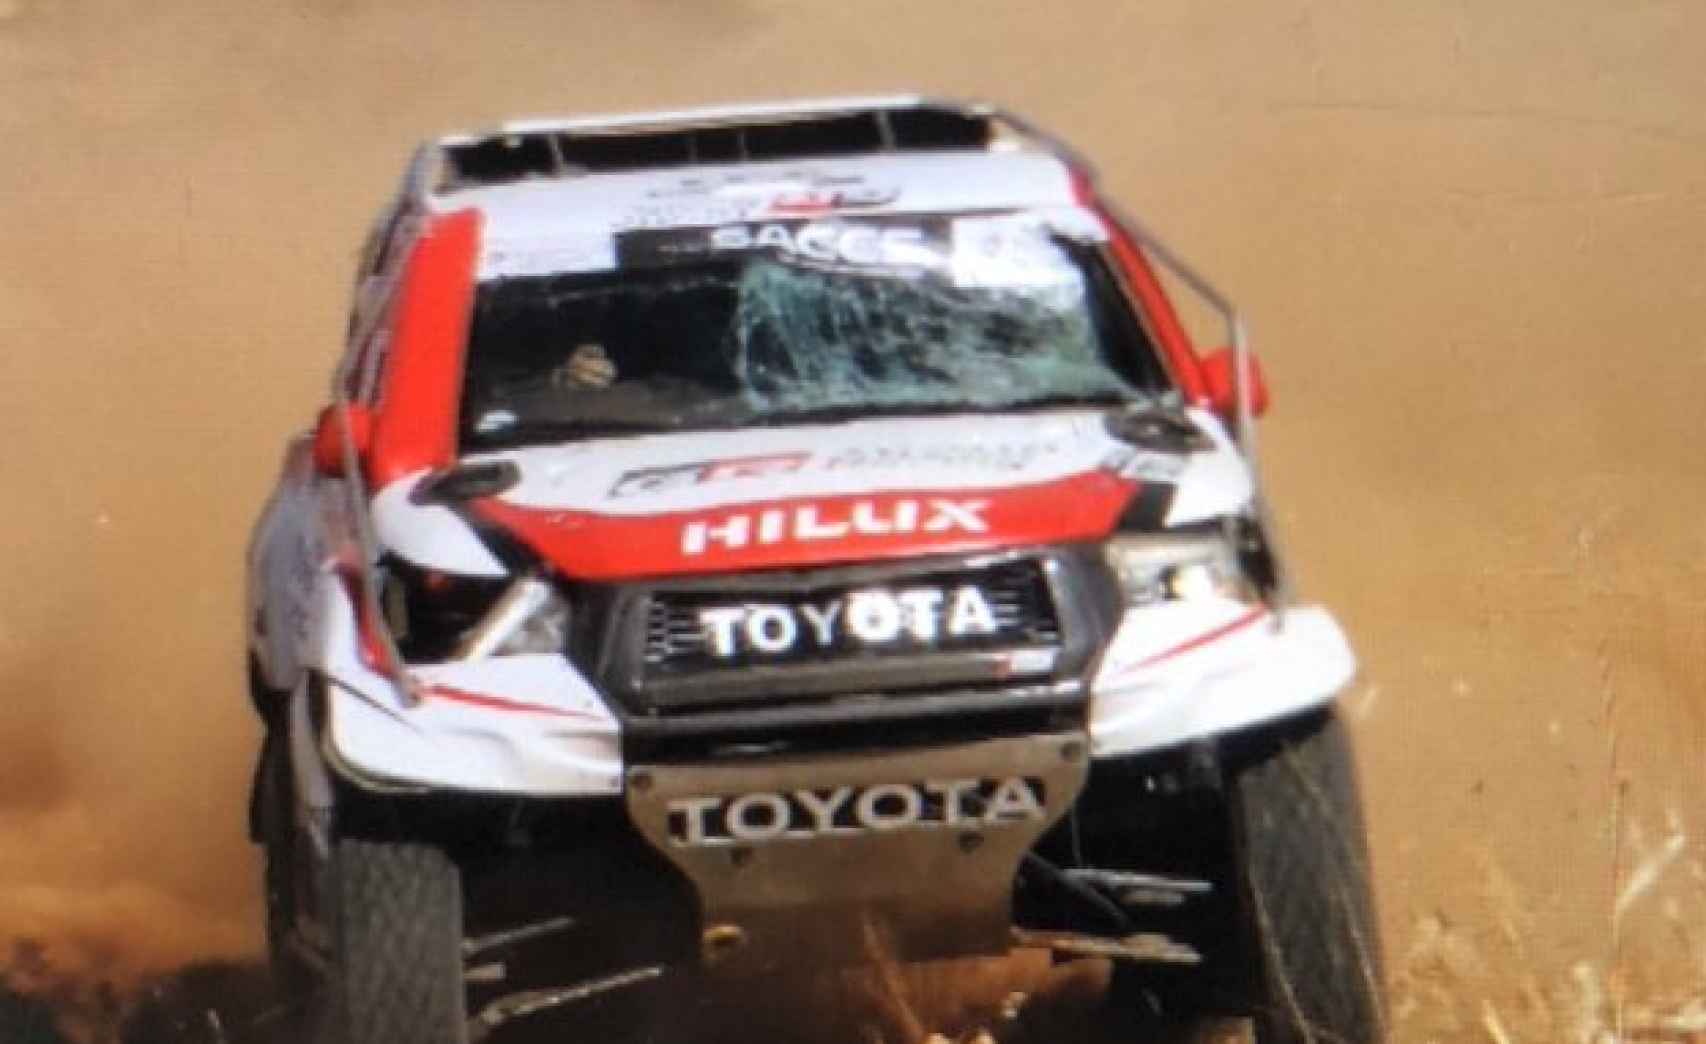 El Toyota de Alonso tras el accidente. Foto: Twitter (@ReubenVN)